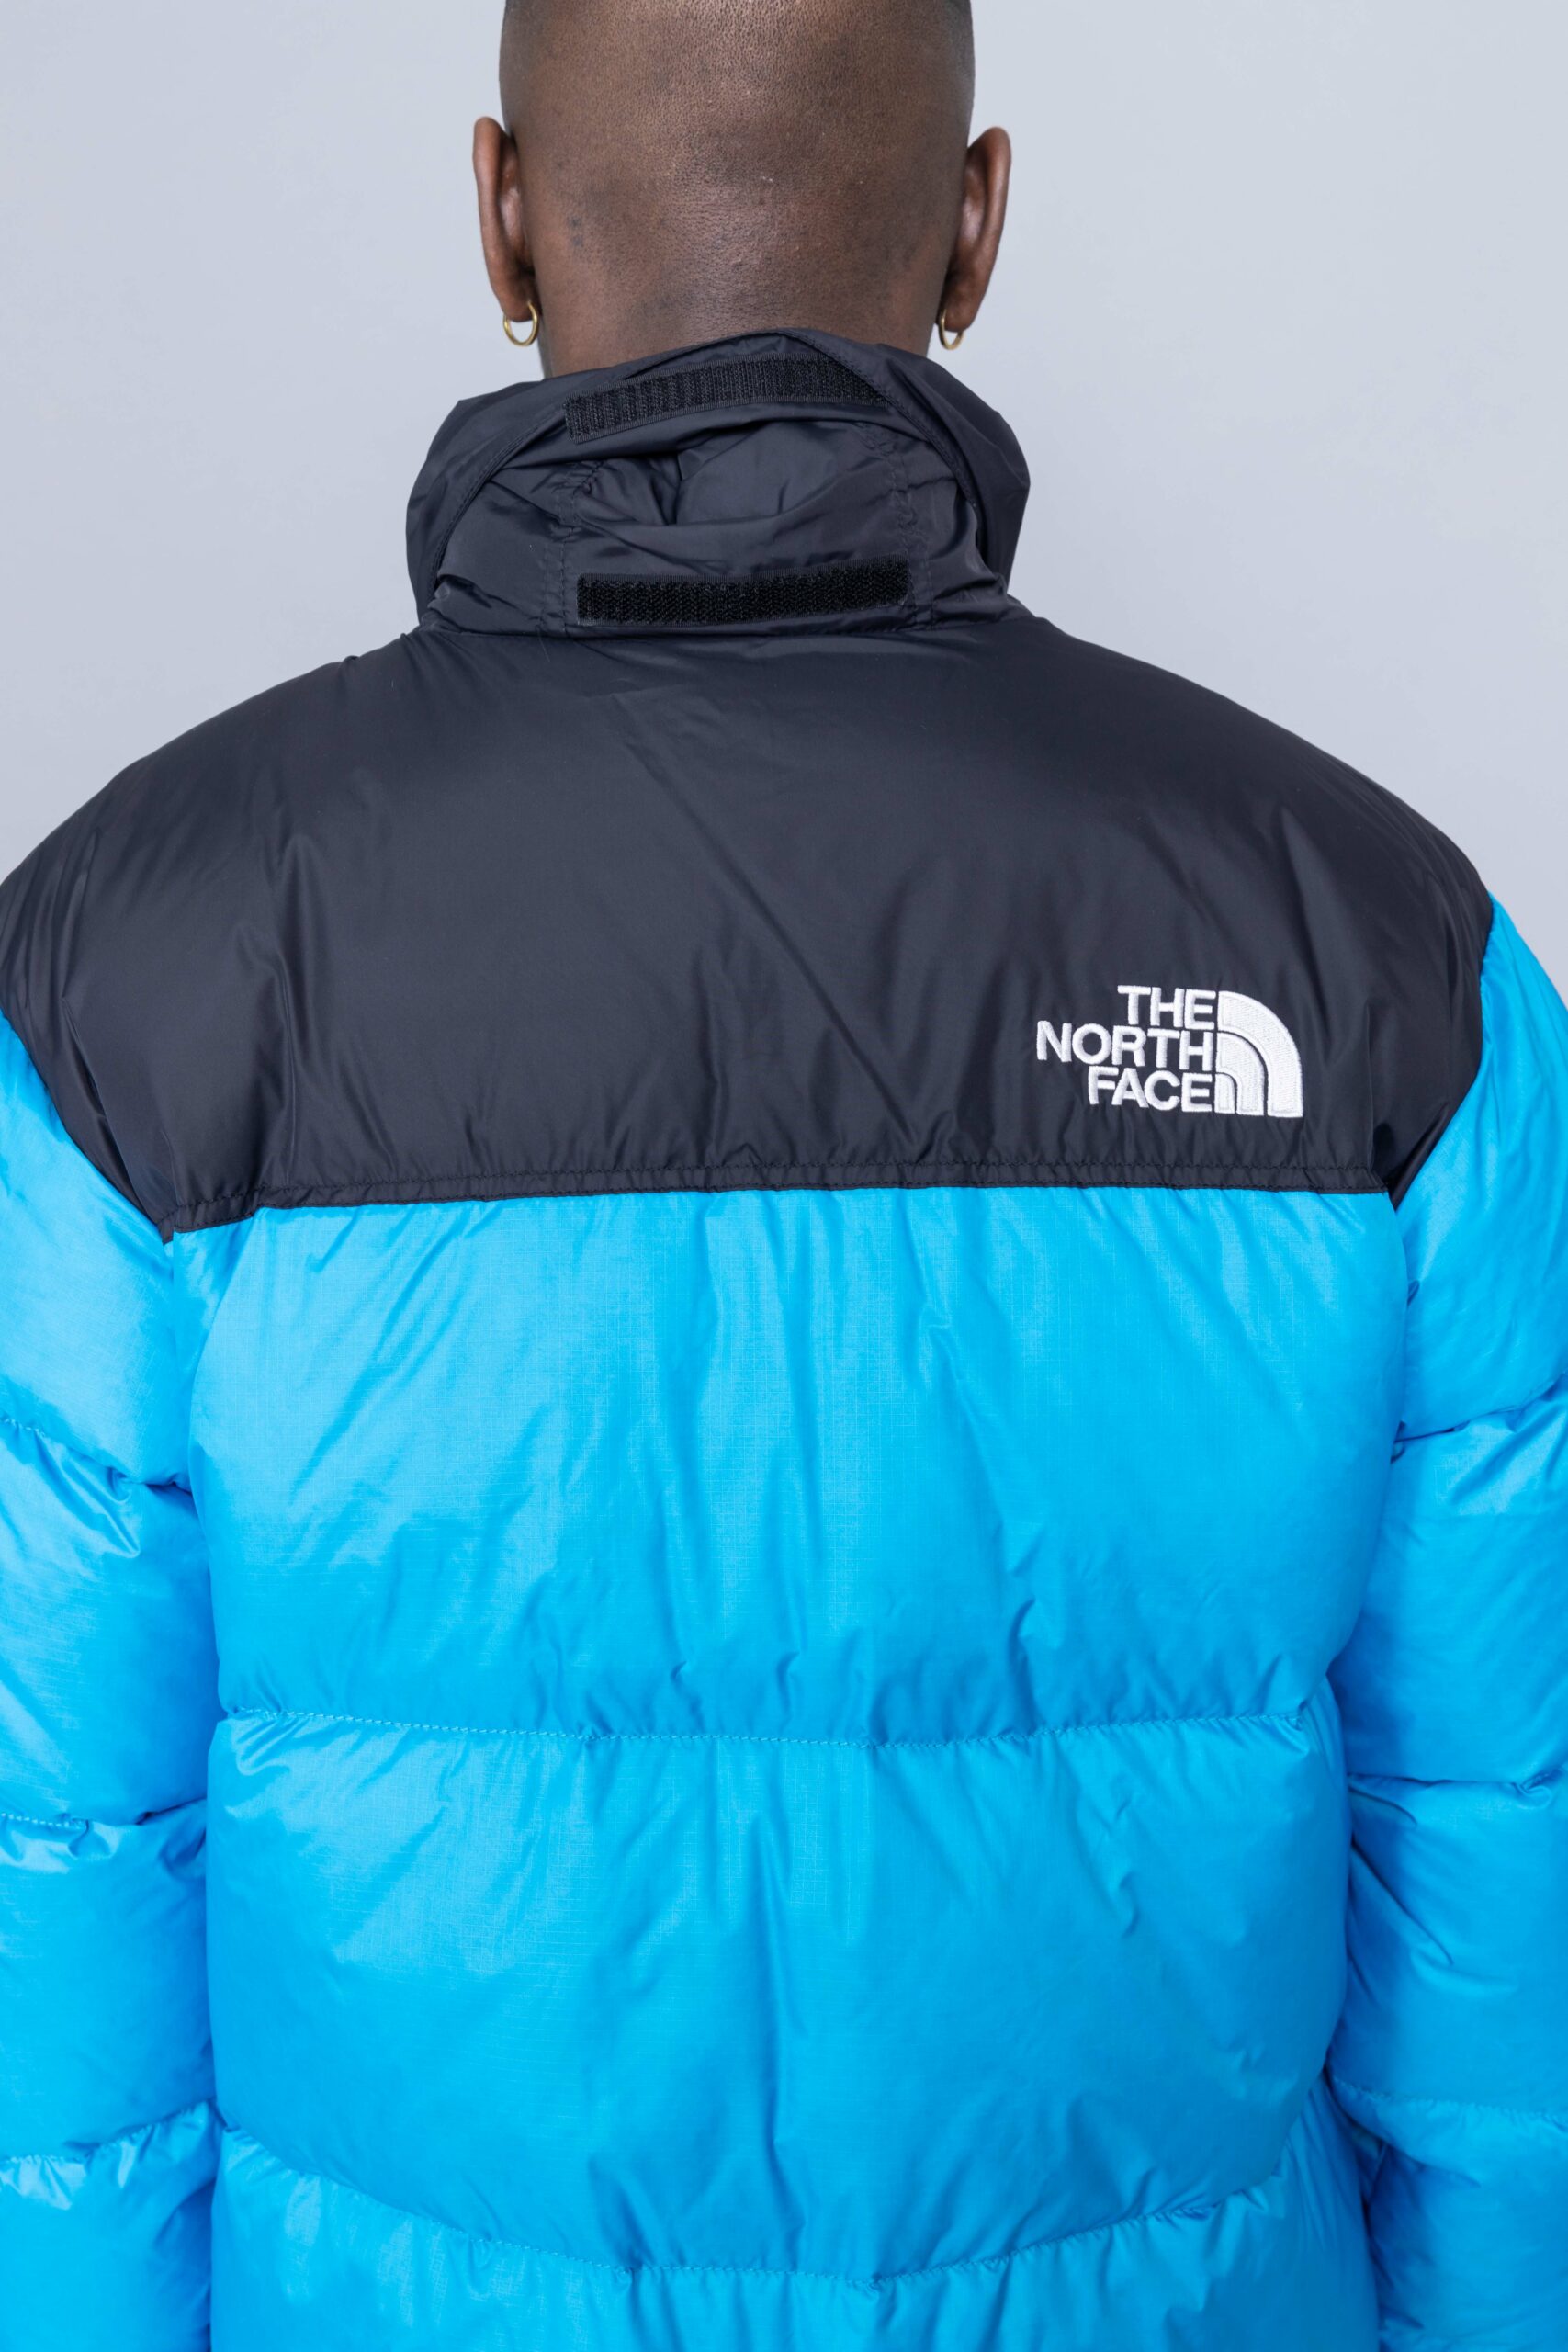 north face nuptse jacket canada